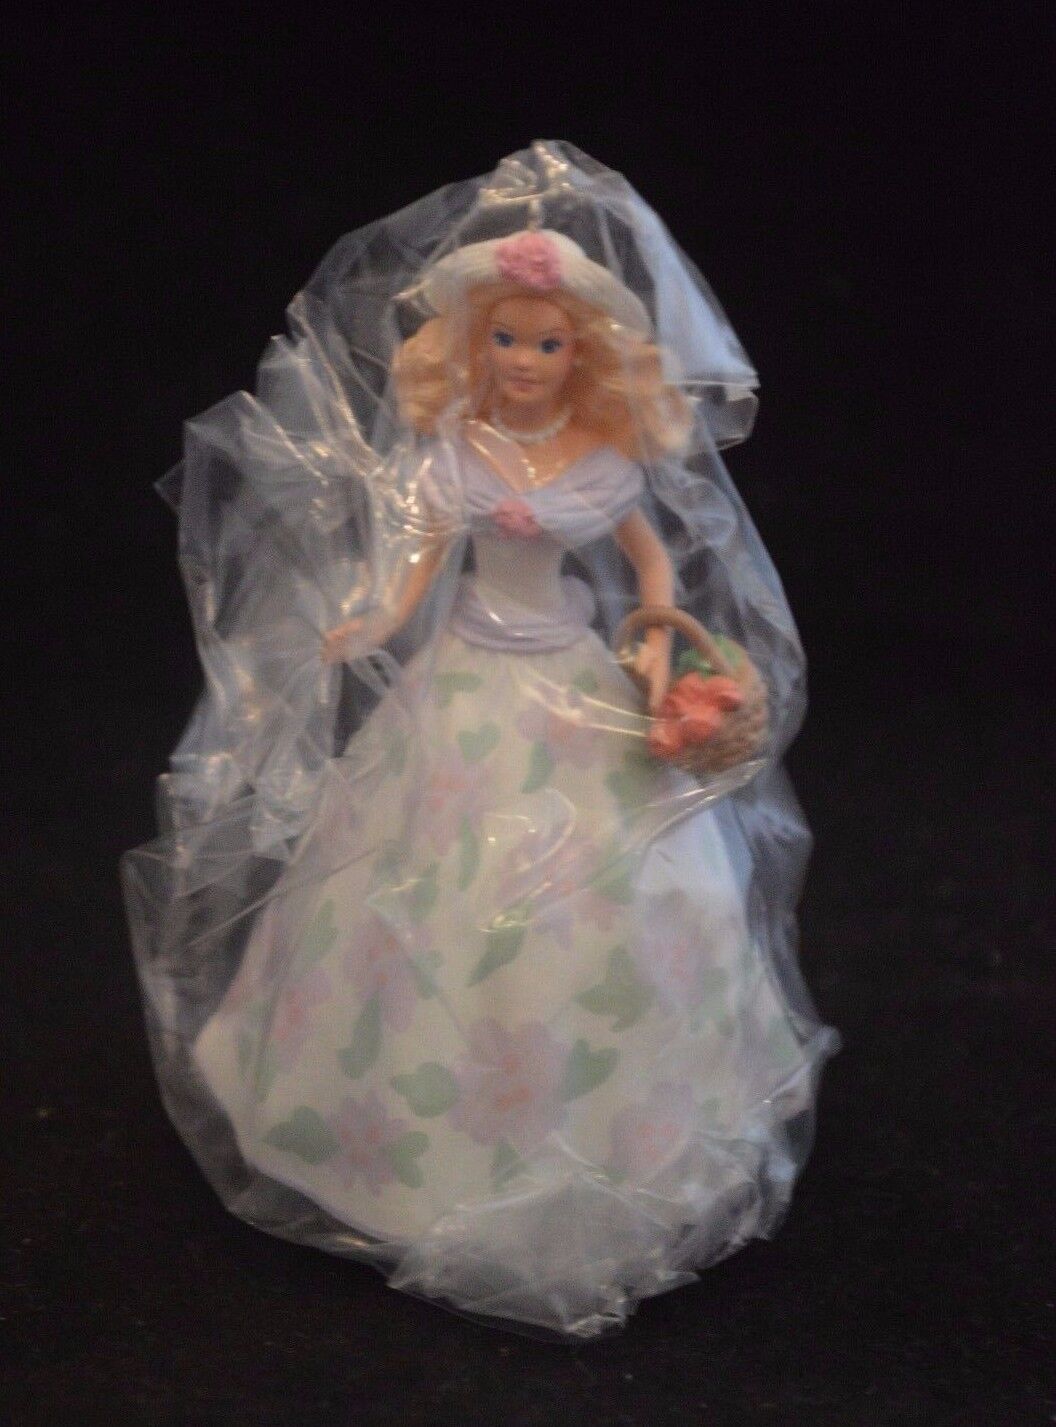 1995 Vintage Hallmark Keepsake Ornament - Springtime Barbie Doll